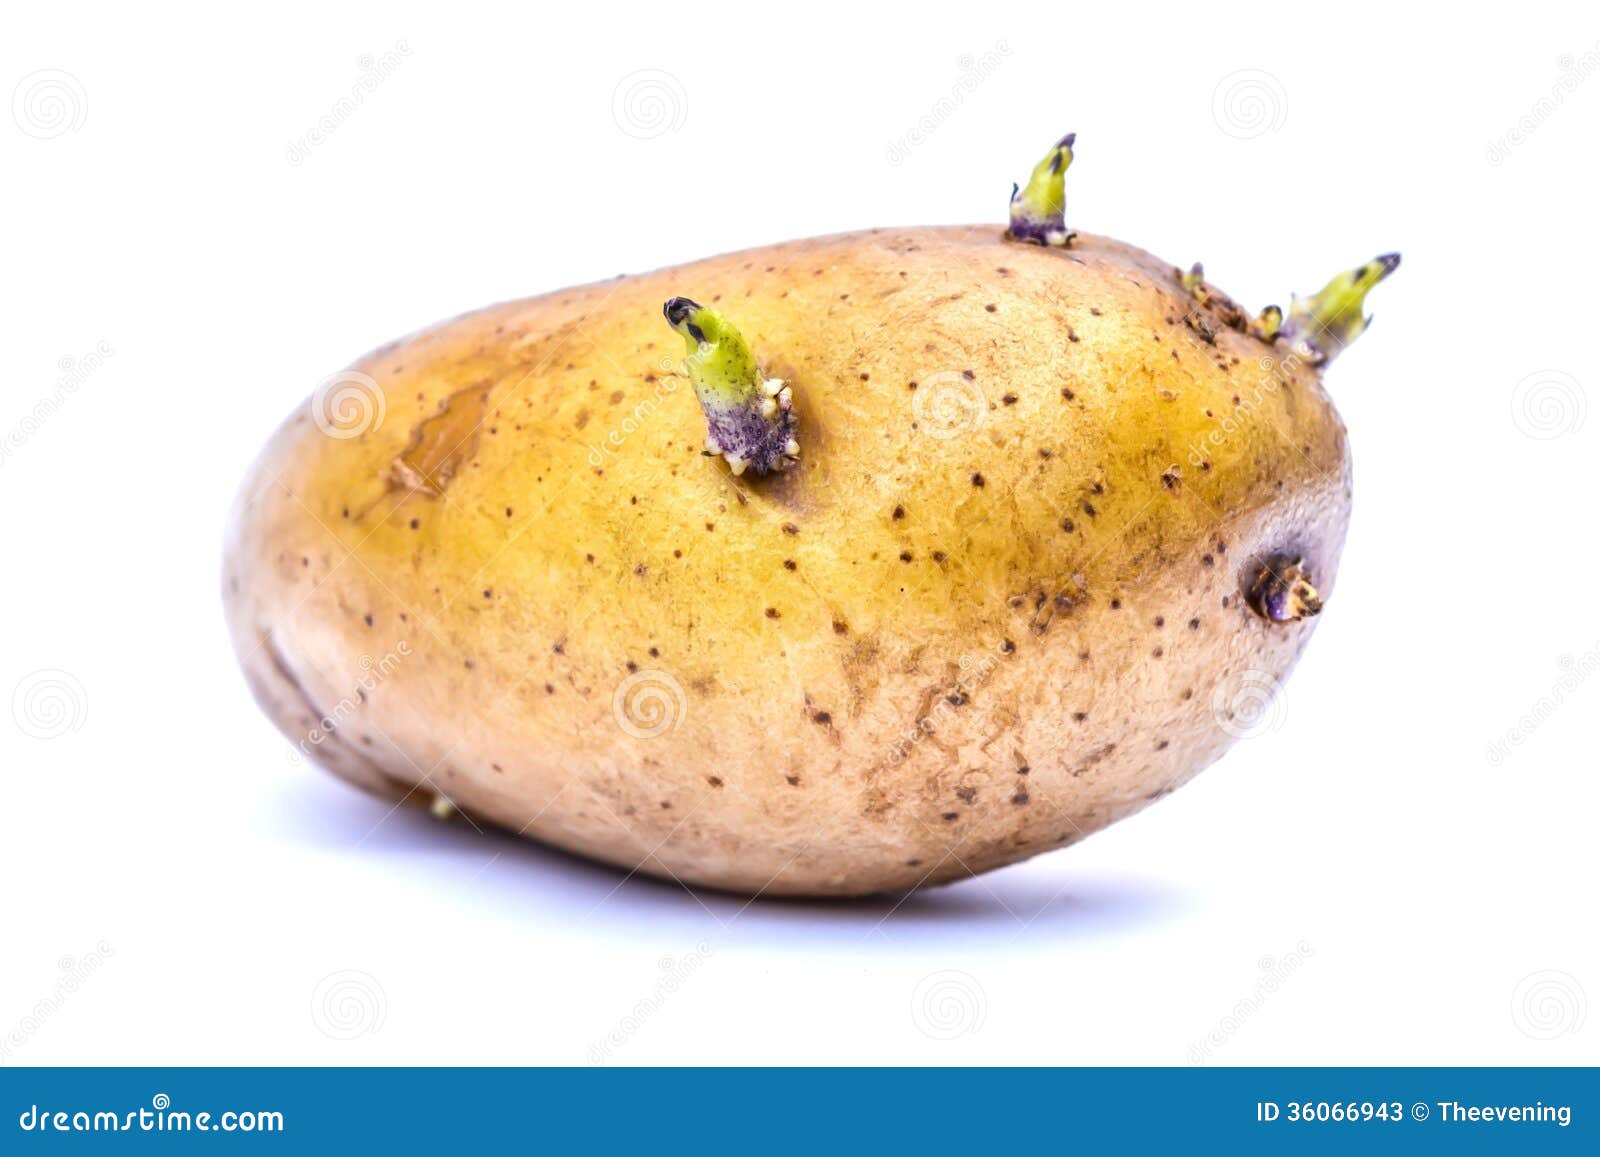 germinate potato